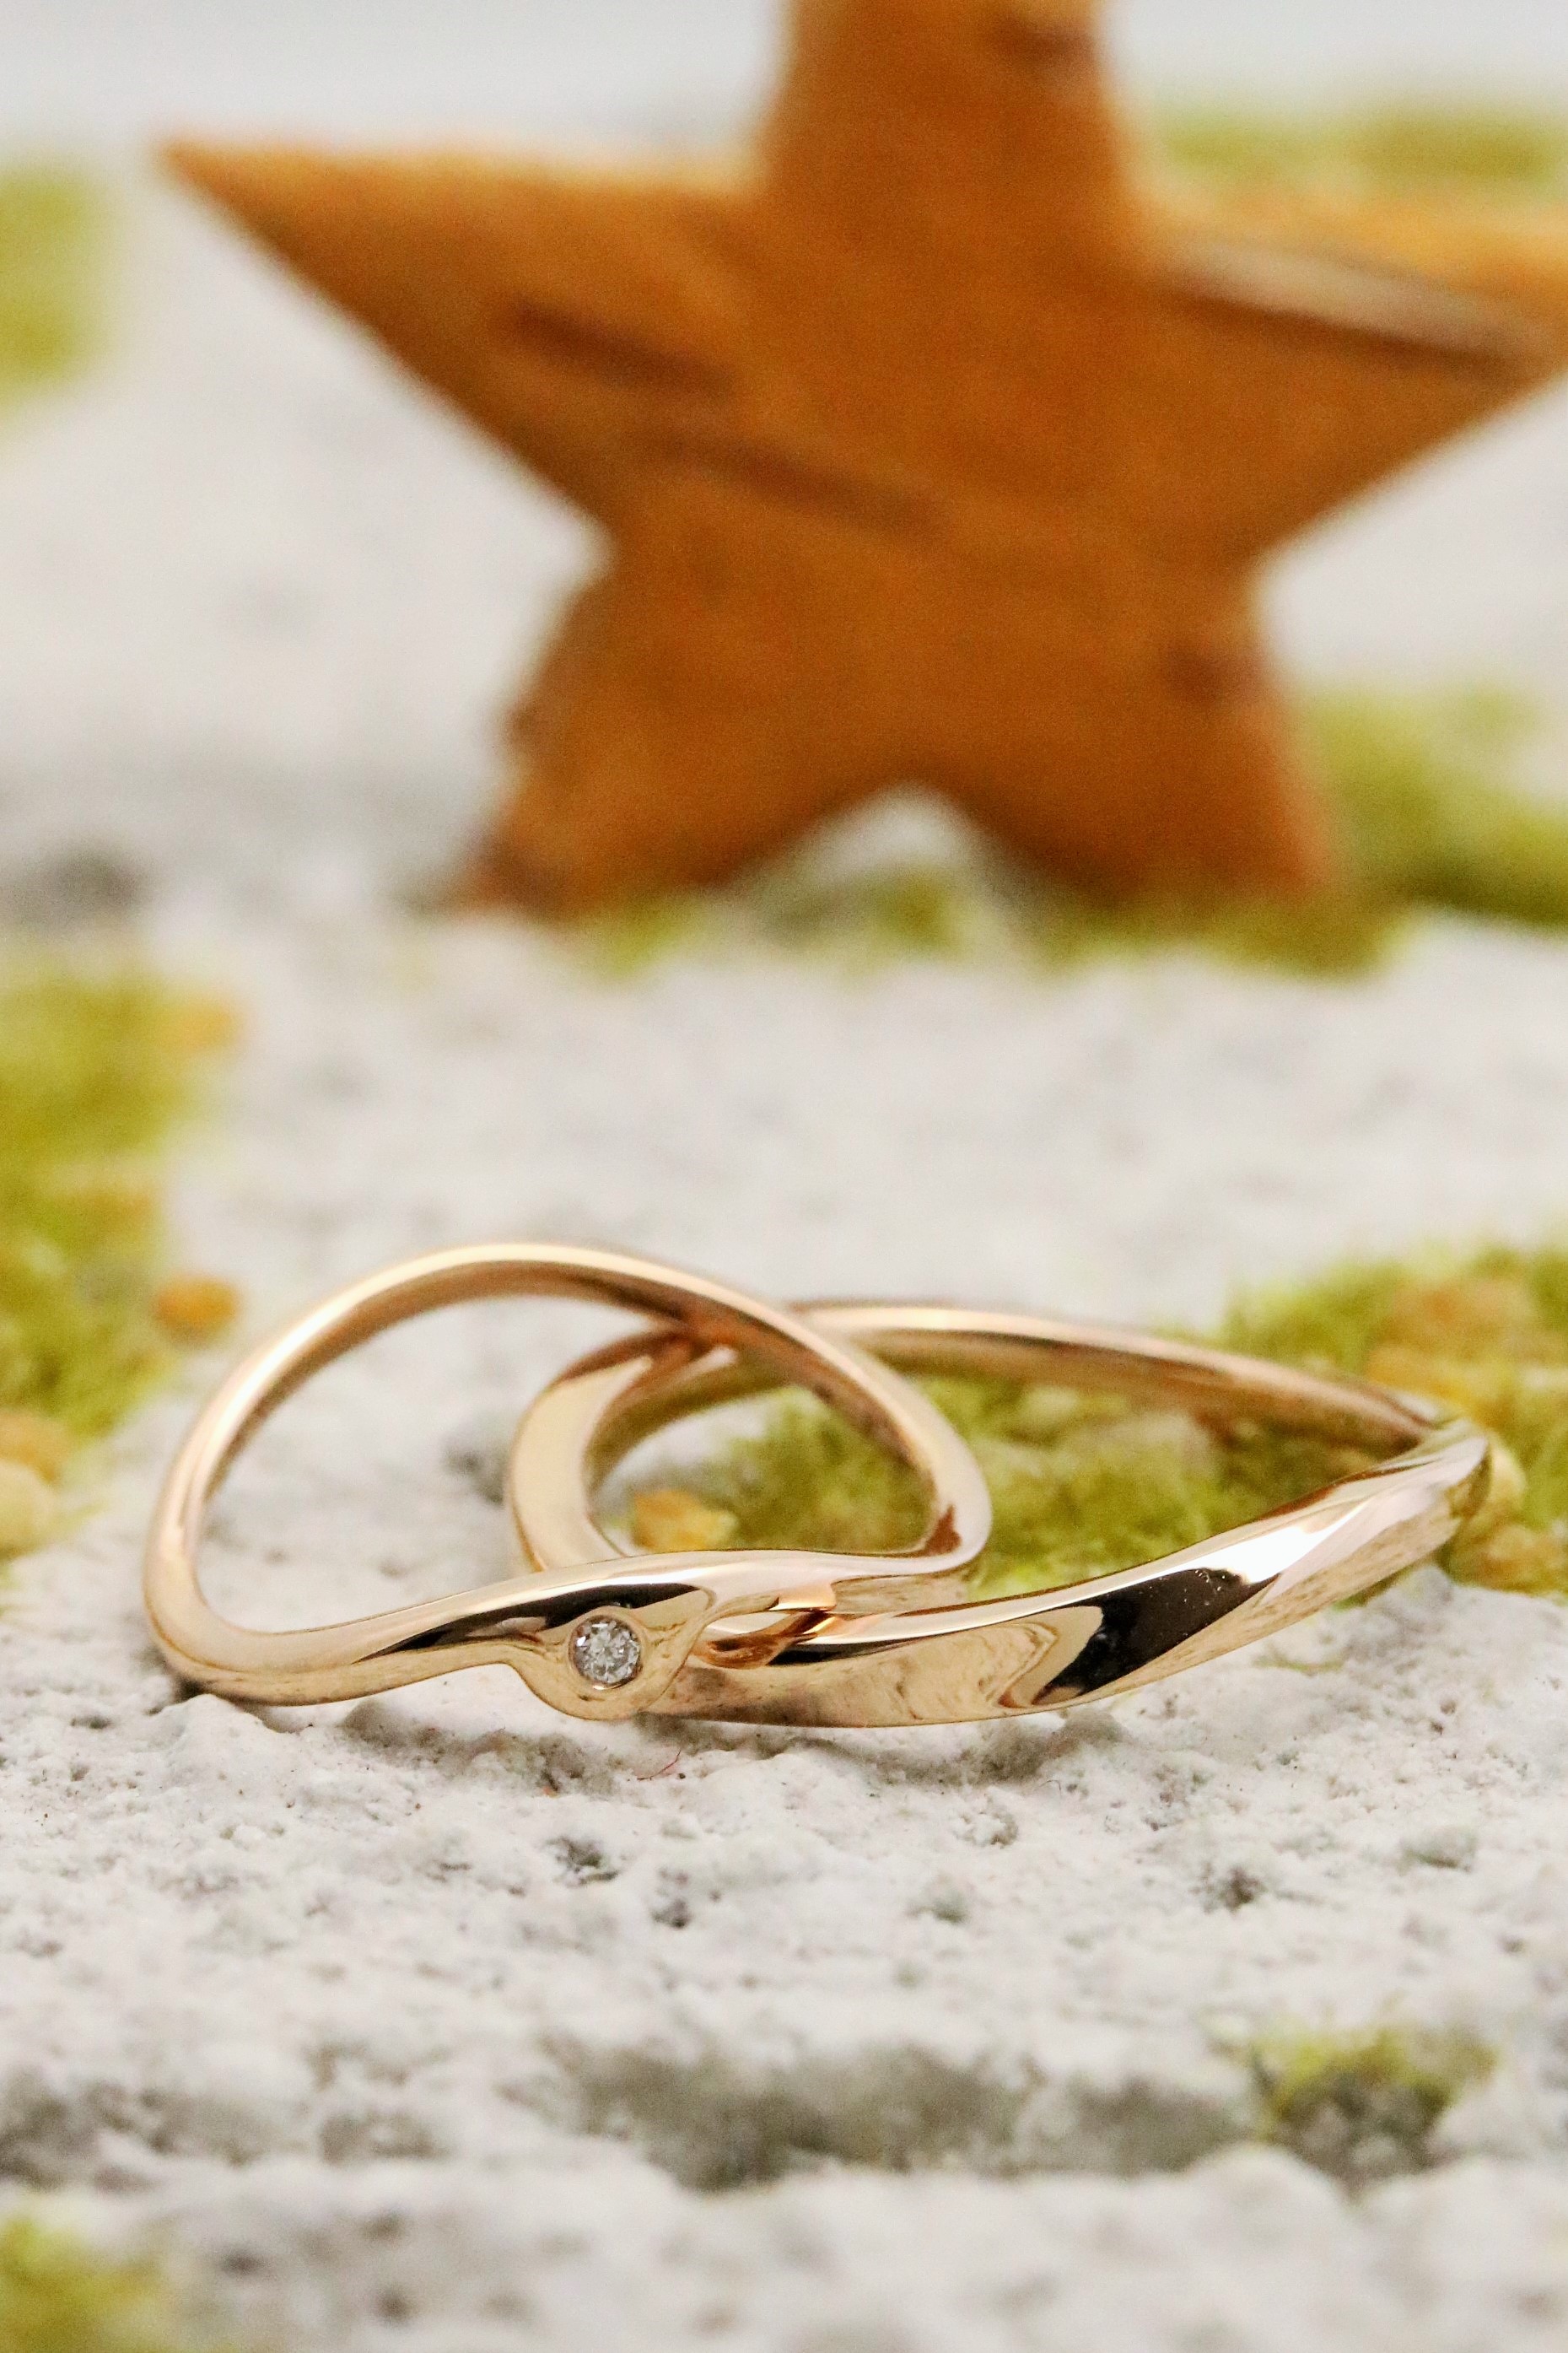 手作りのオリジナルピンキーリングが完成しました 関西 神戸 大阪で結婚指輪 婚約指輪 遺骨リング 遺骨ペンダントを手作り とオーダーメイドが出来るアトリエ